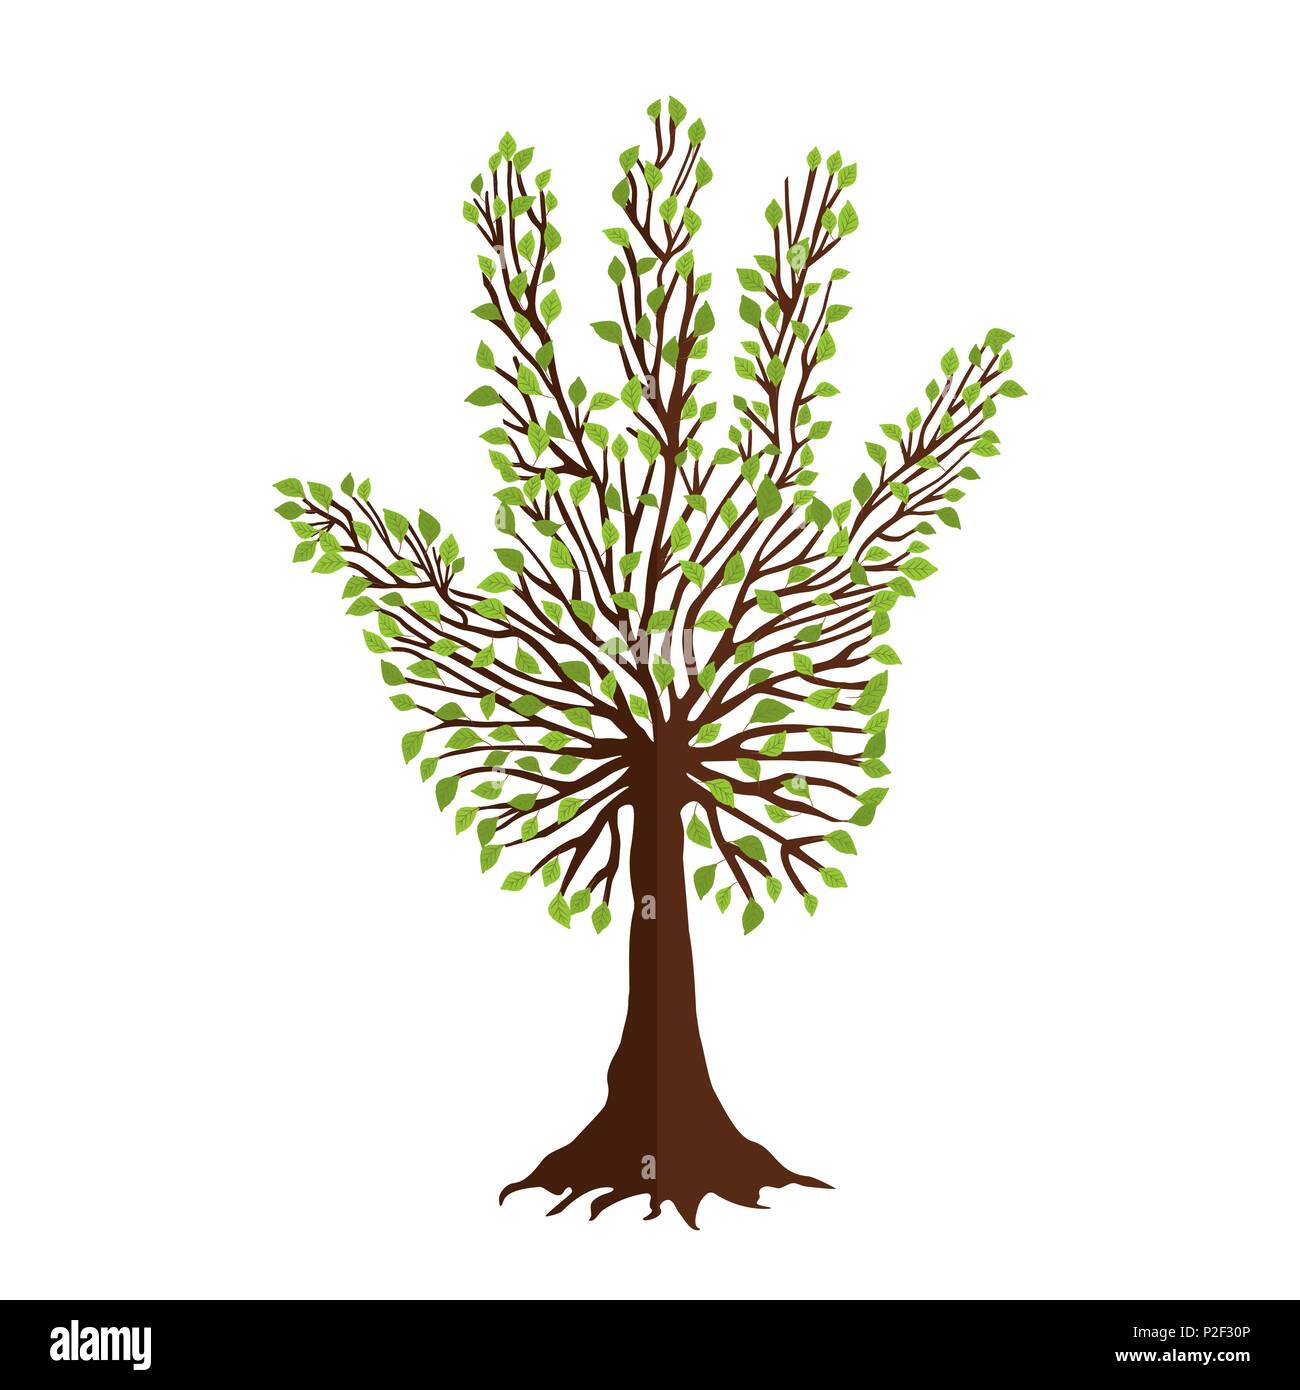 Mit grünen menschliche Hand Form in den Filialen Baum. Natur Hilfe Konzept, Umwelt Team oder Erde pflege Teamarbeit. EPS 10 Vektor. Stock Vektor